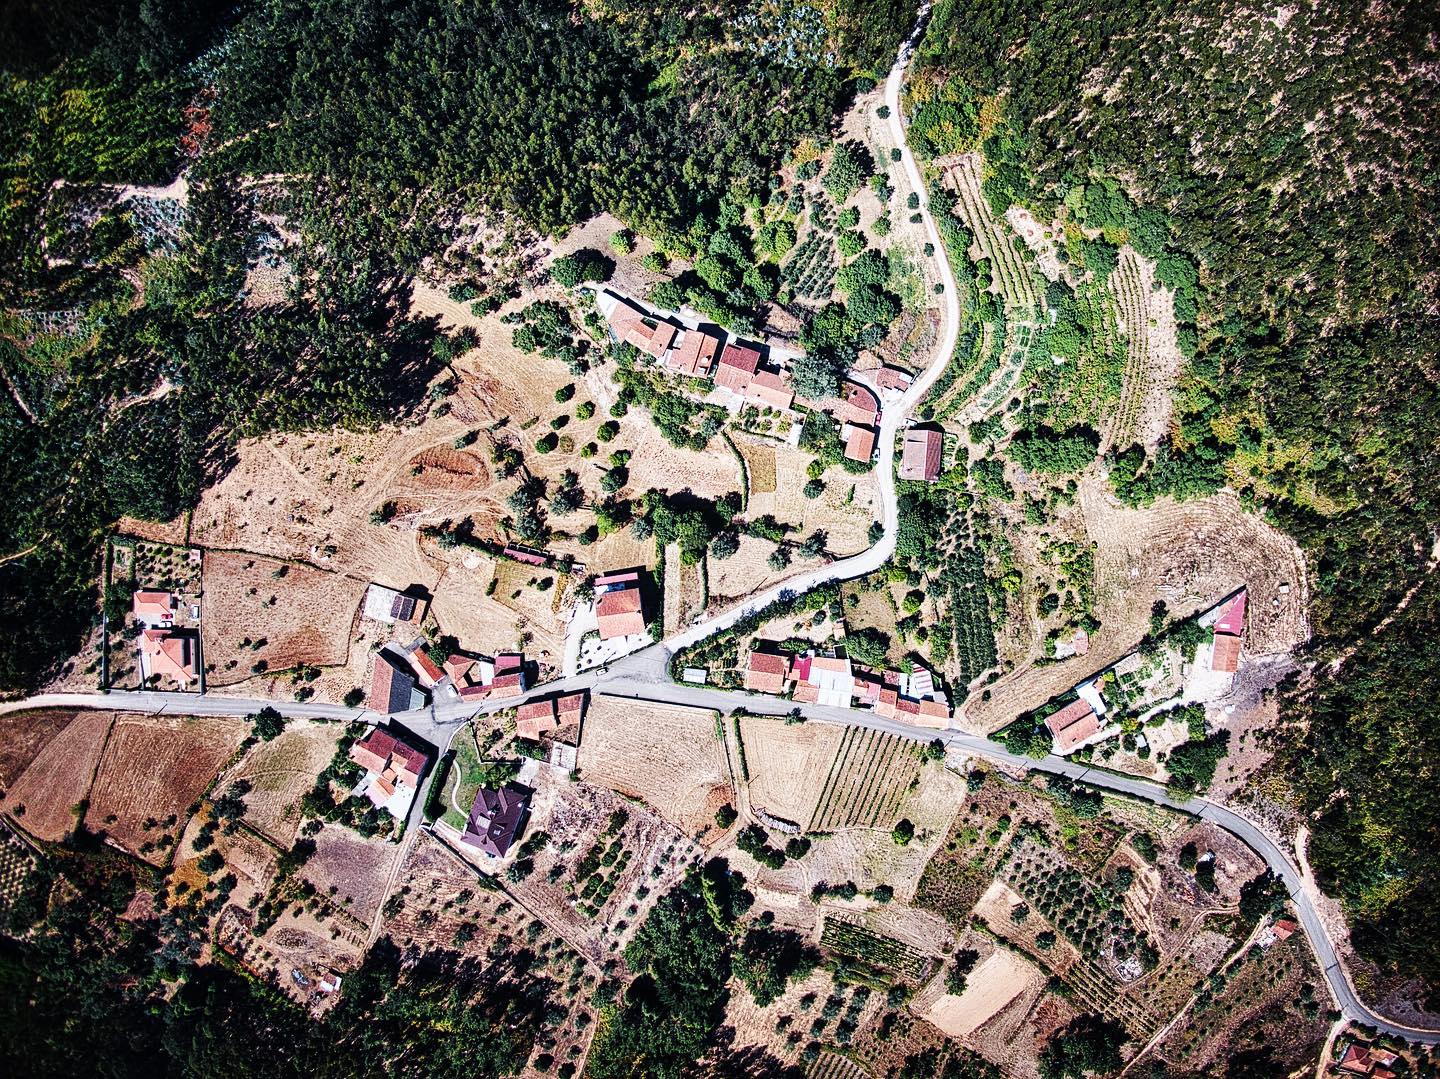 Overhead view of Casqueira, Figueira de Lorvão, Portugal.